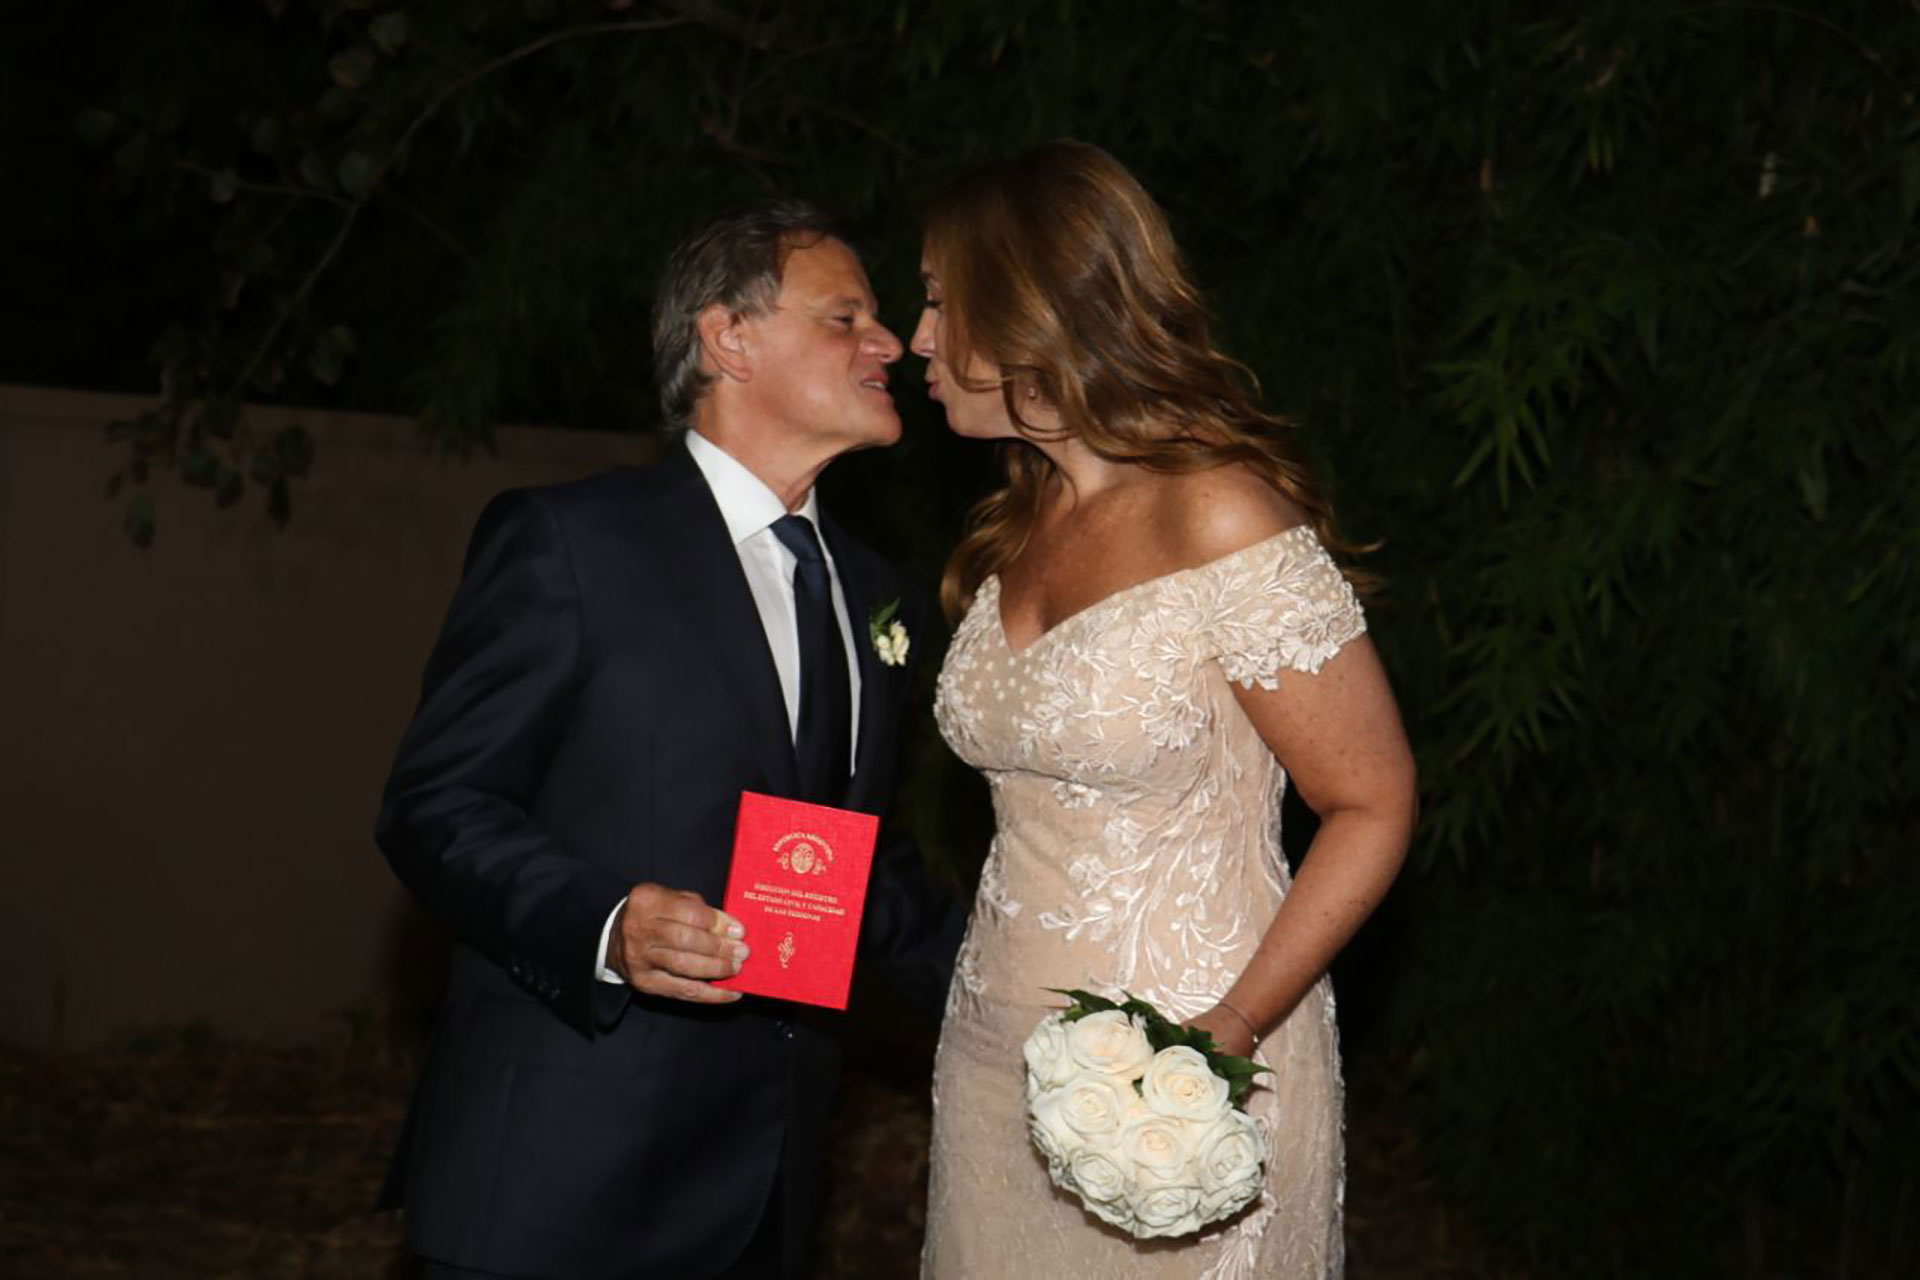 El casamiento de María Eugenia Vidal y “Quique” Sacco: los políticos  invitados y las primeras fotos del festejo - Infobae